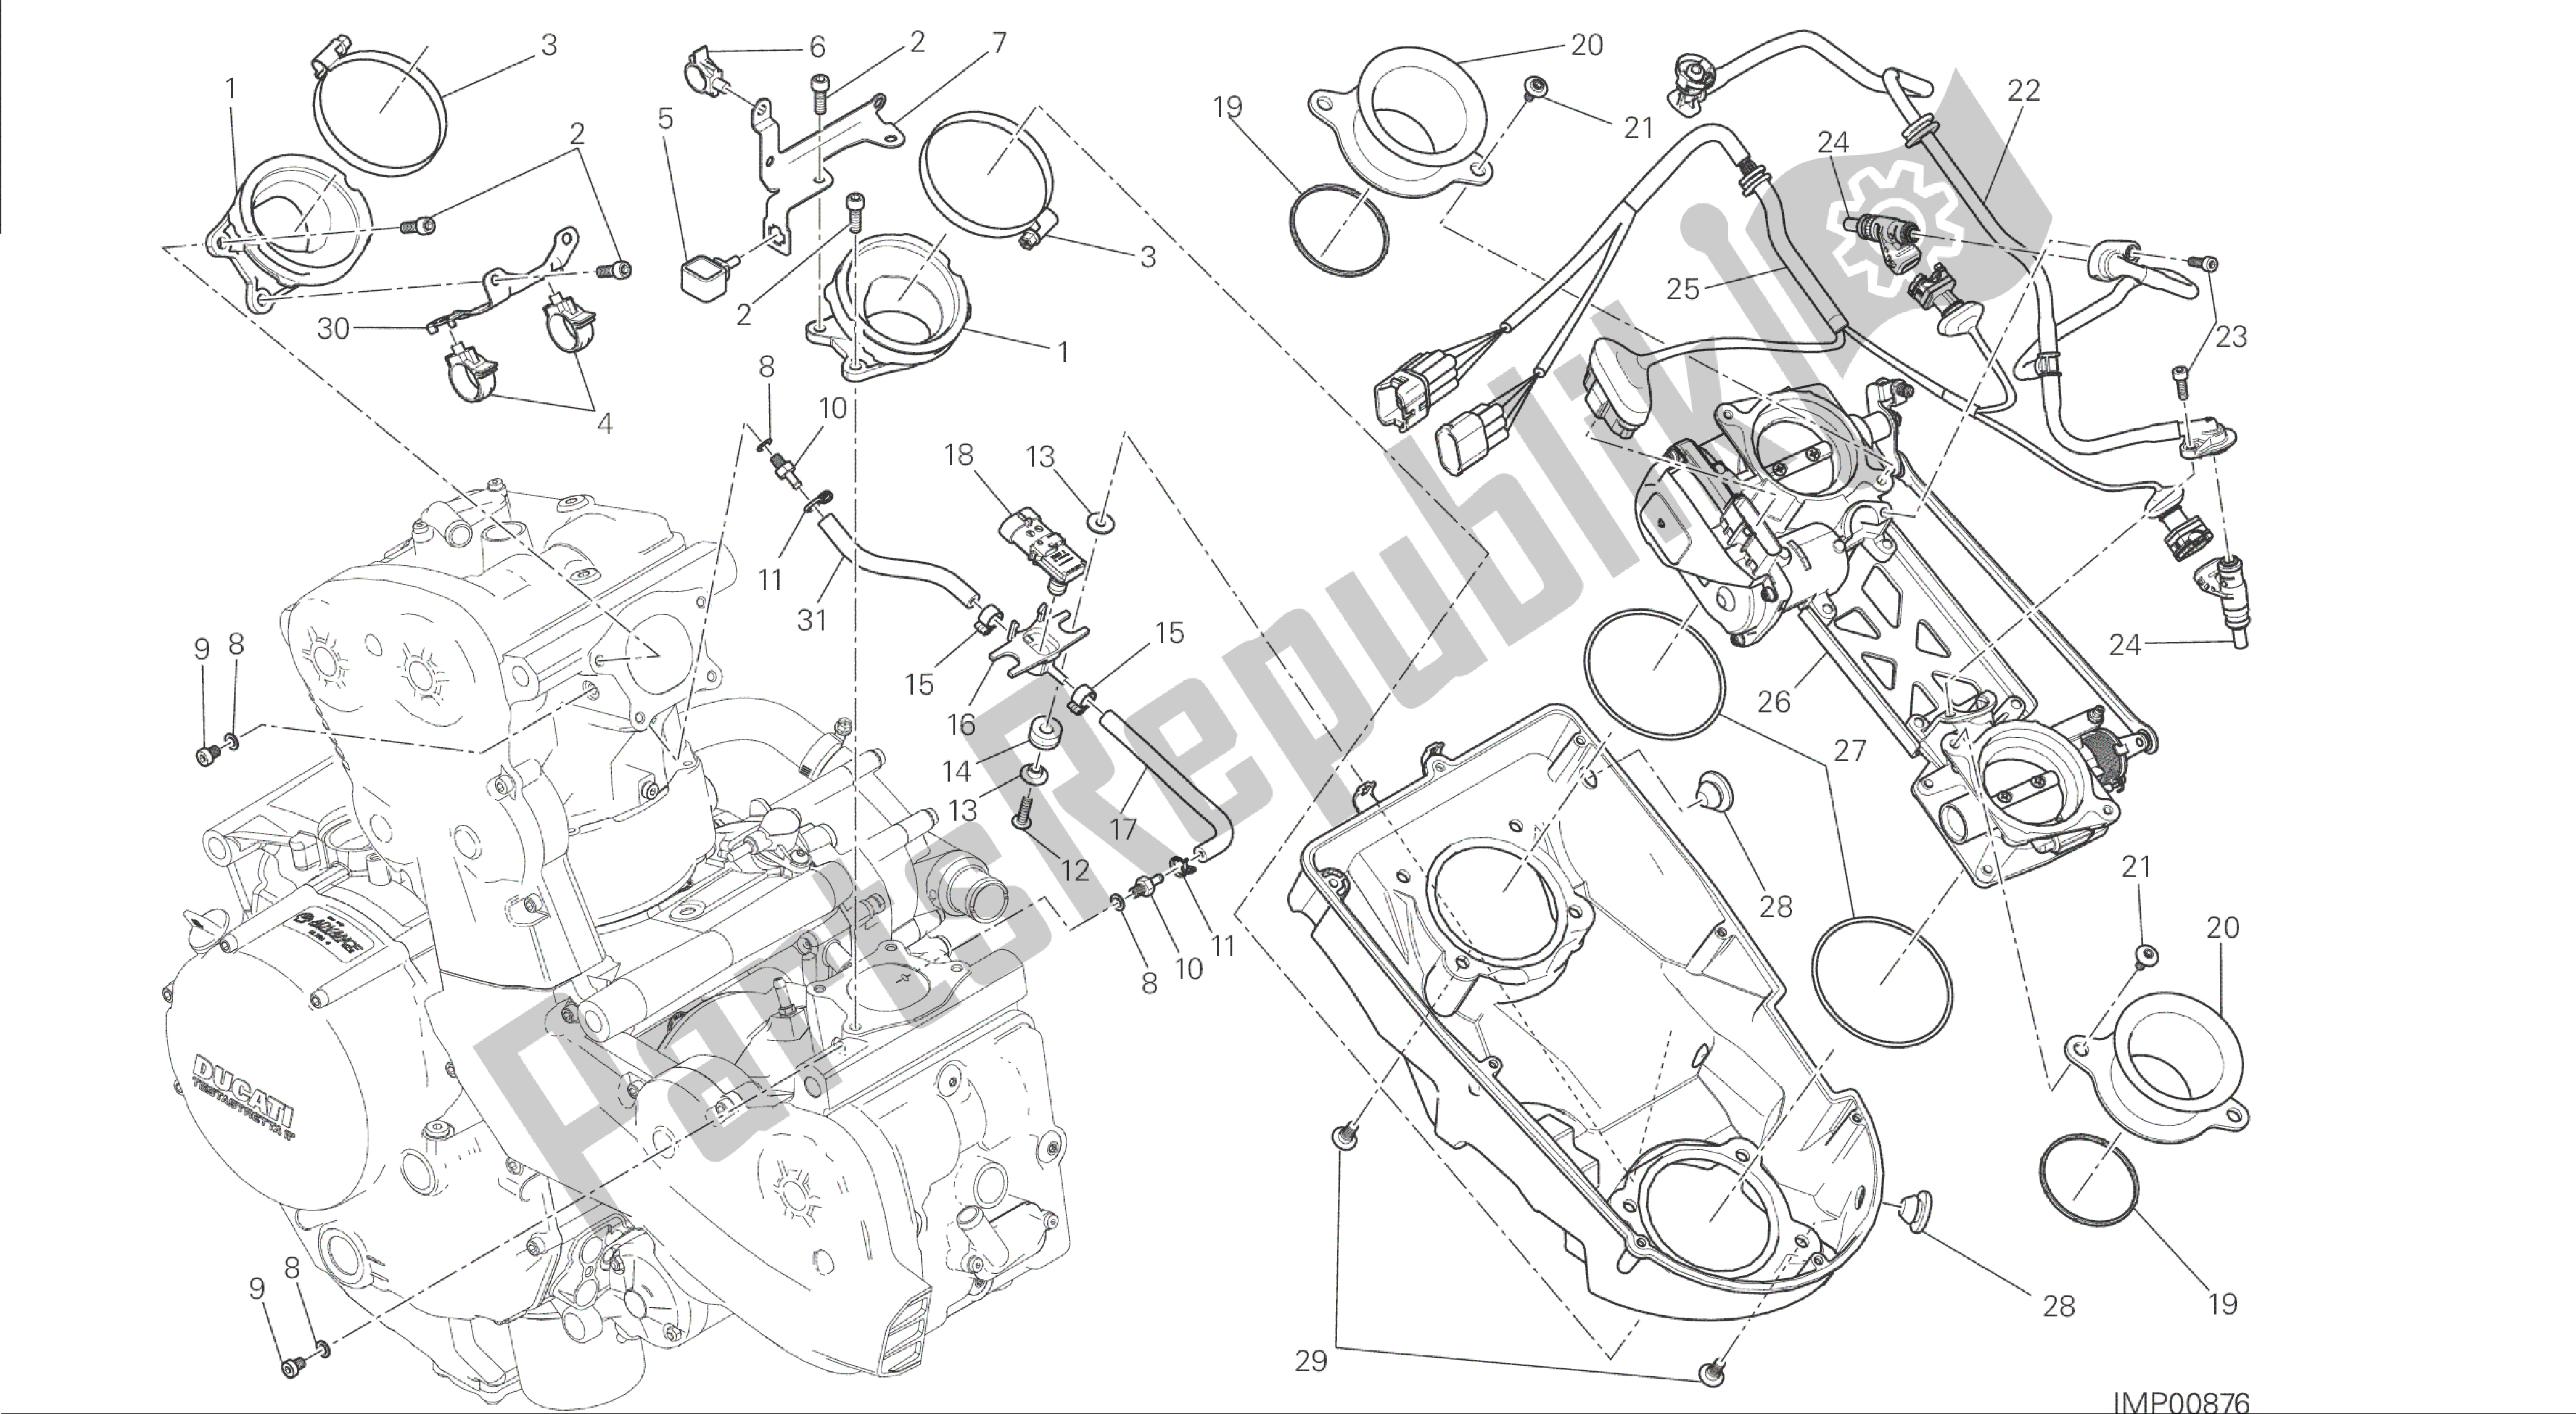 Alle onderdelen voor de Tekening 017 - Gasklephuis [mod: M 1200; Xst: Aus, Eur, Fra, Jap] Groepsframe van de Ducati Monster 1200 2014